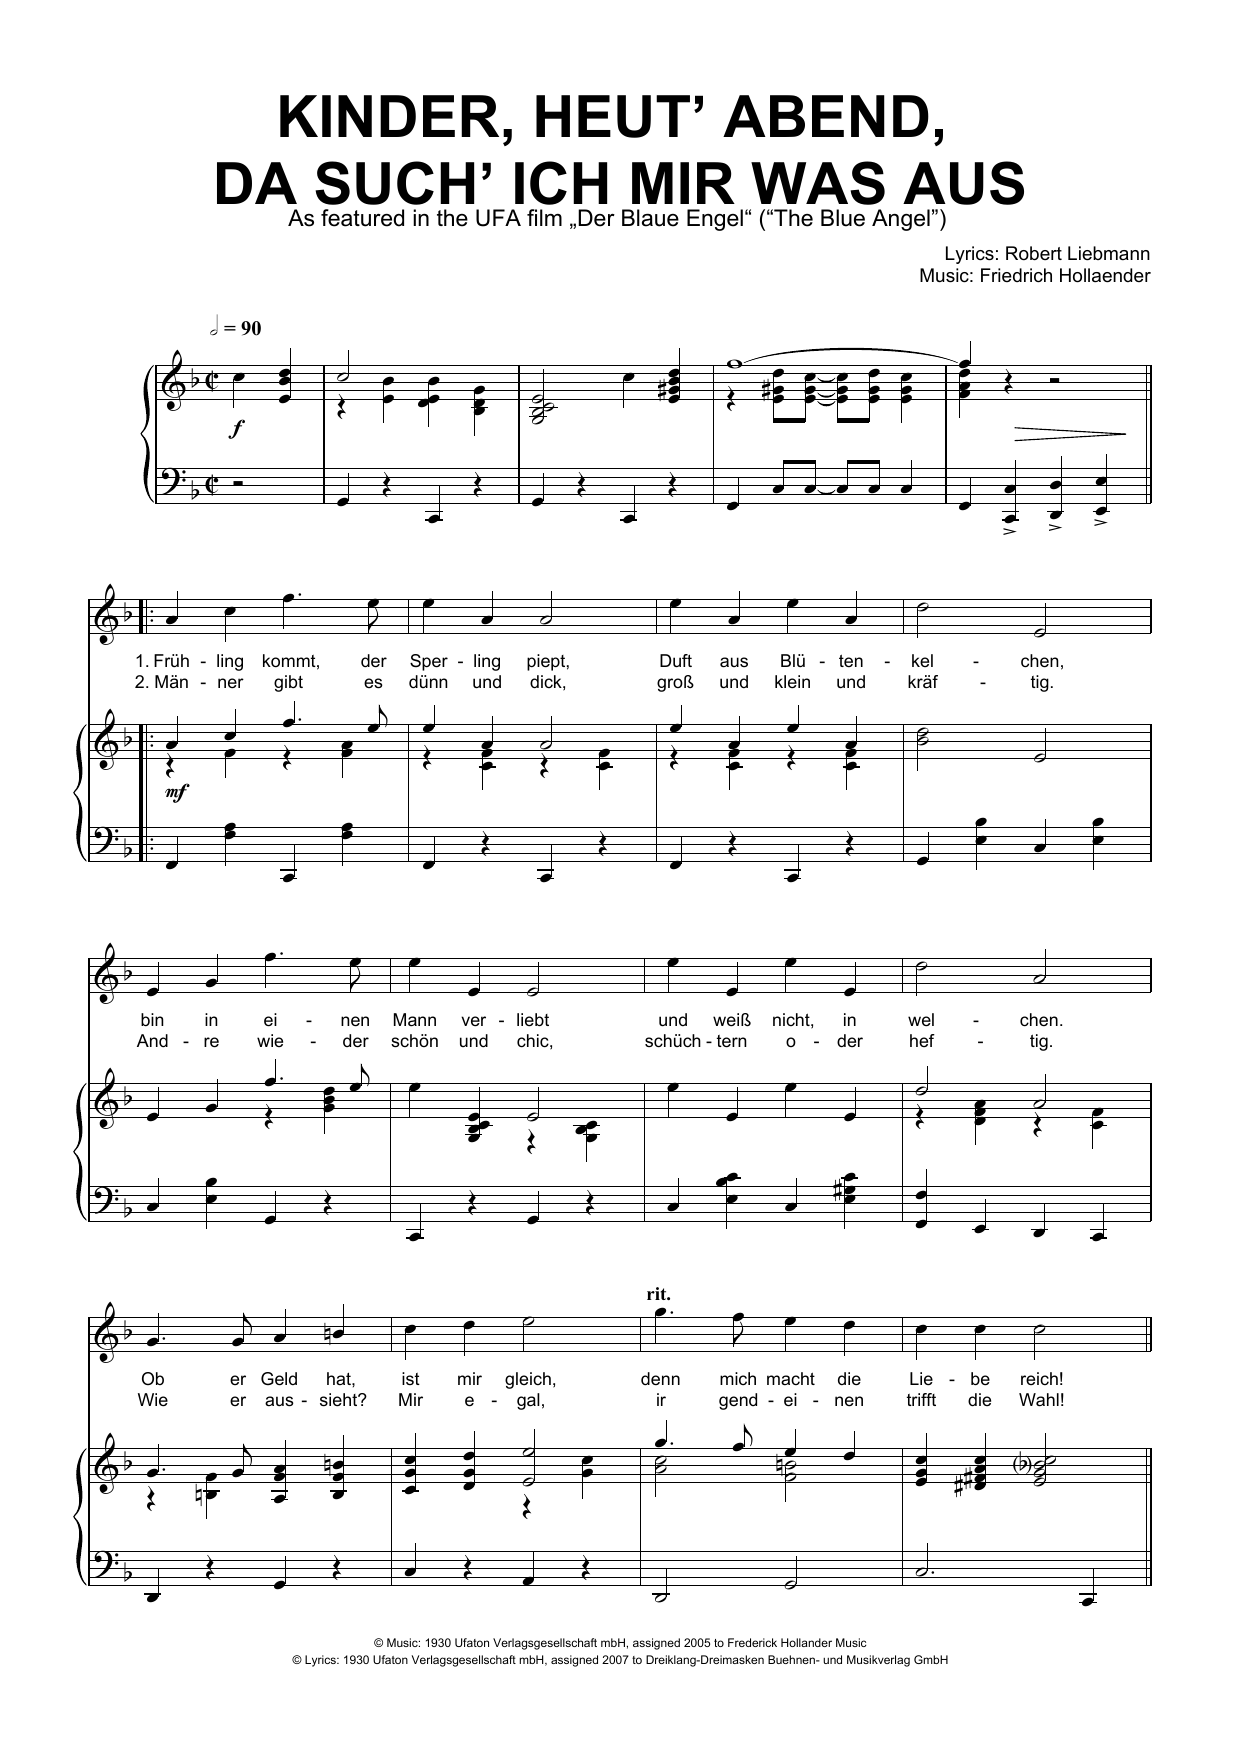 Friedrich Hollaender Kinder, Heut' Abend, Da Such' Ich Mir Was Aus Sheet Music Notes & Chords for Piano & Vocal - Download or Print PDF